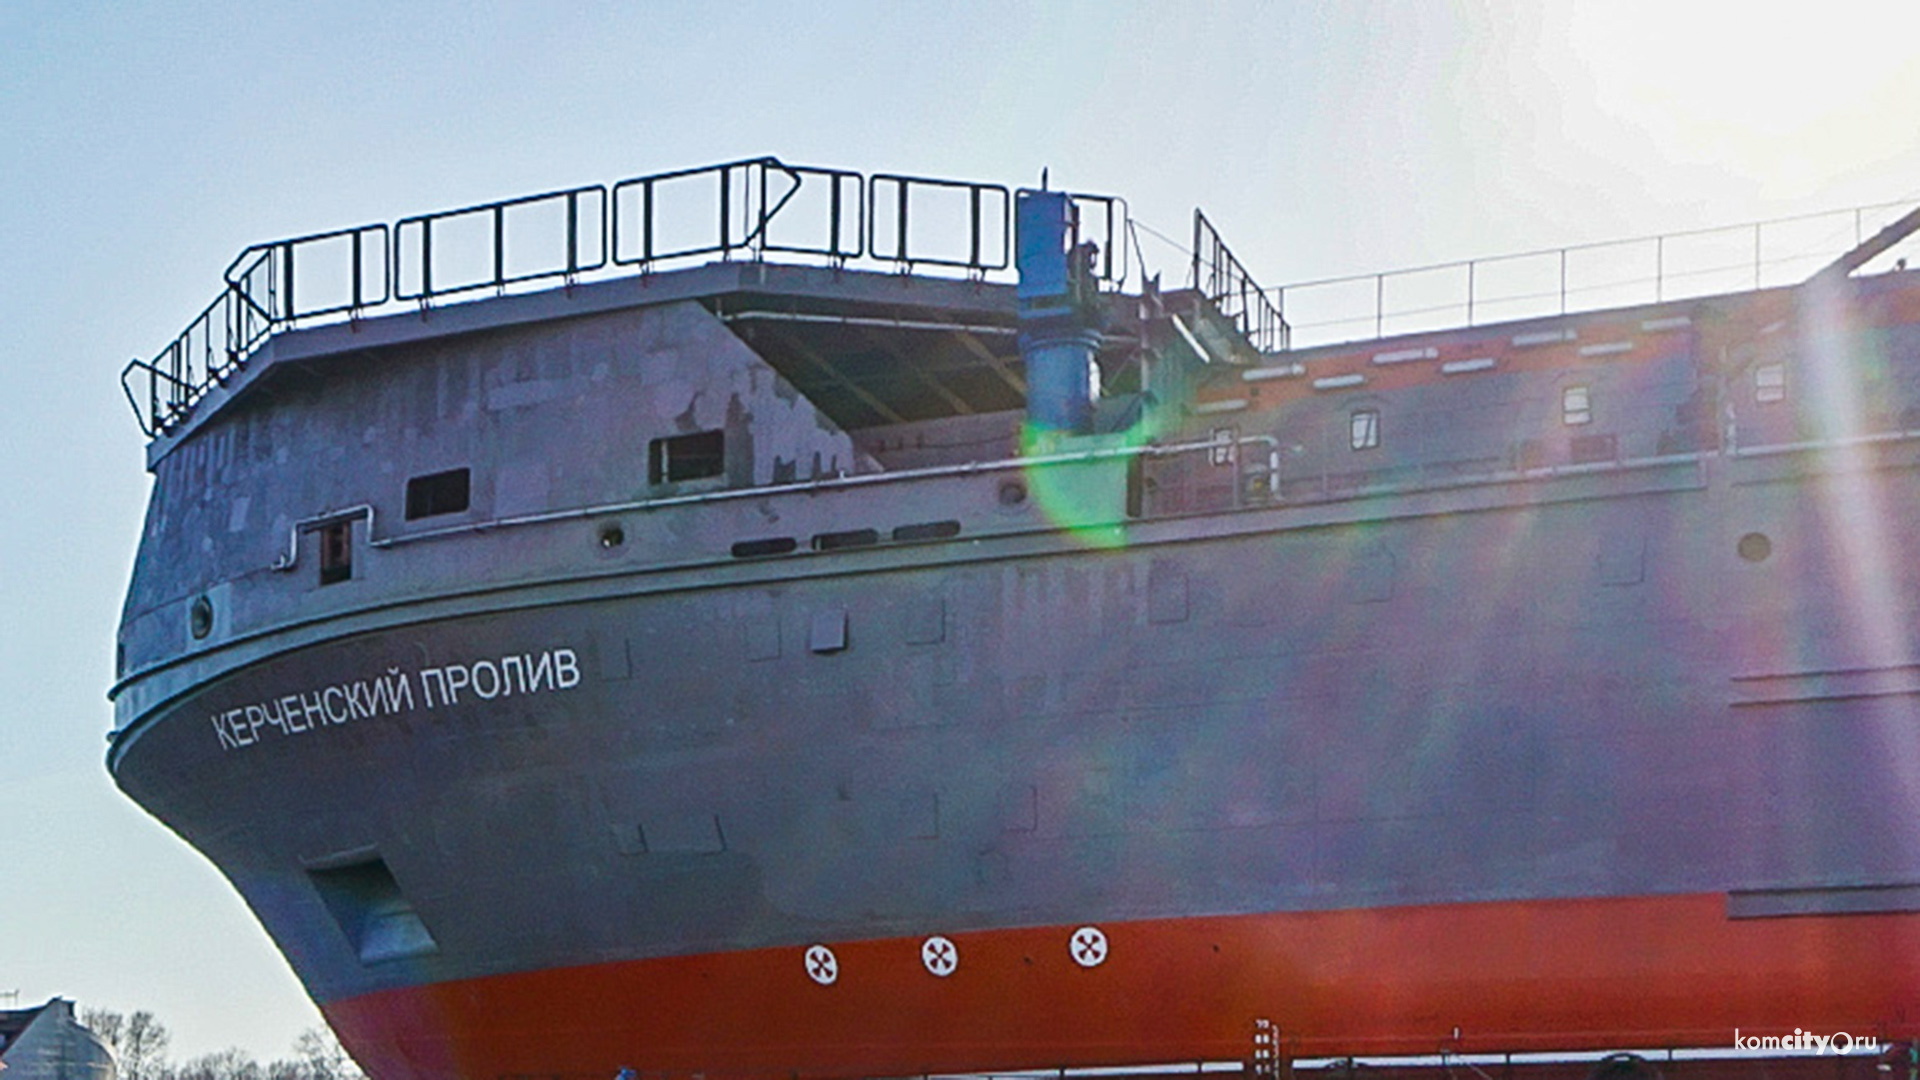 Ноу-хау амурских корабелов — судно-спасатель вернули на сухой стапель